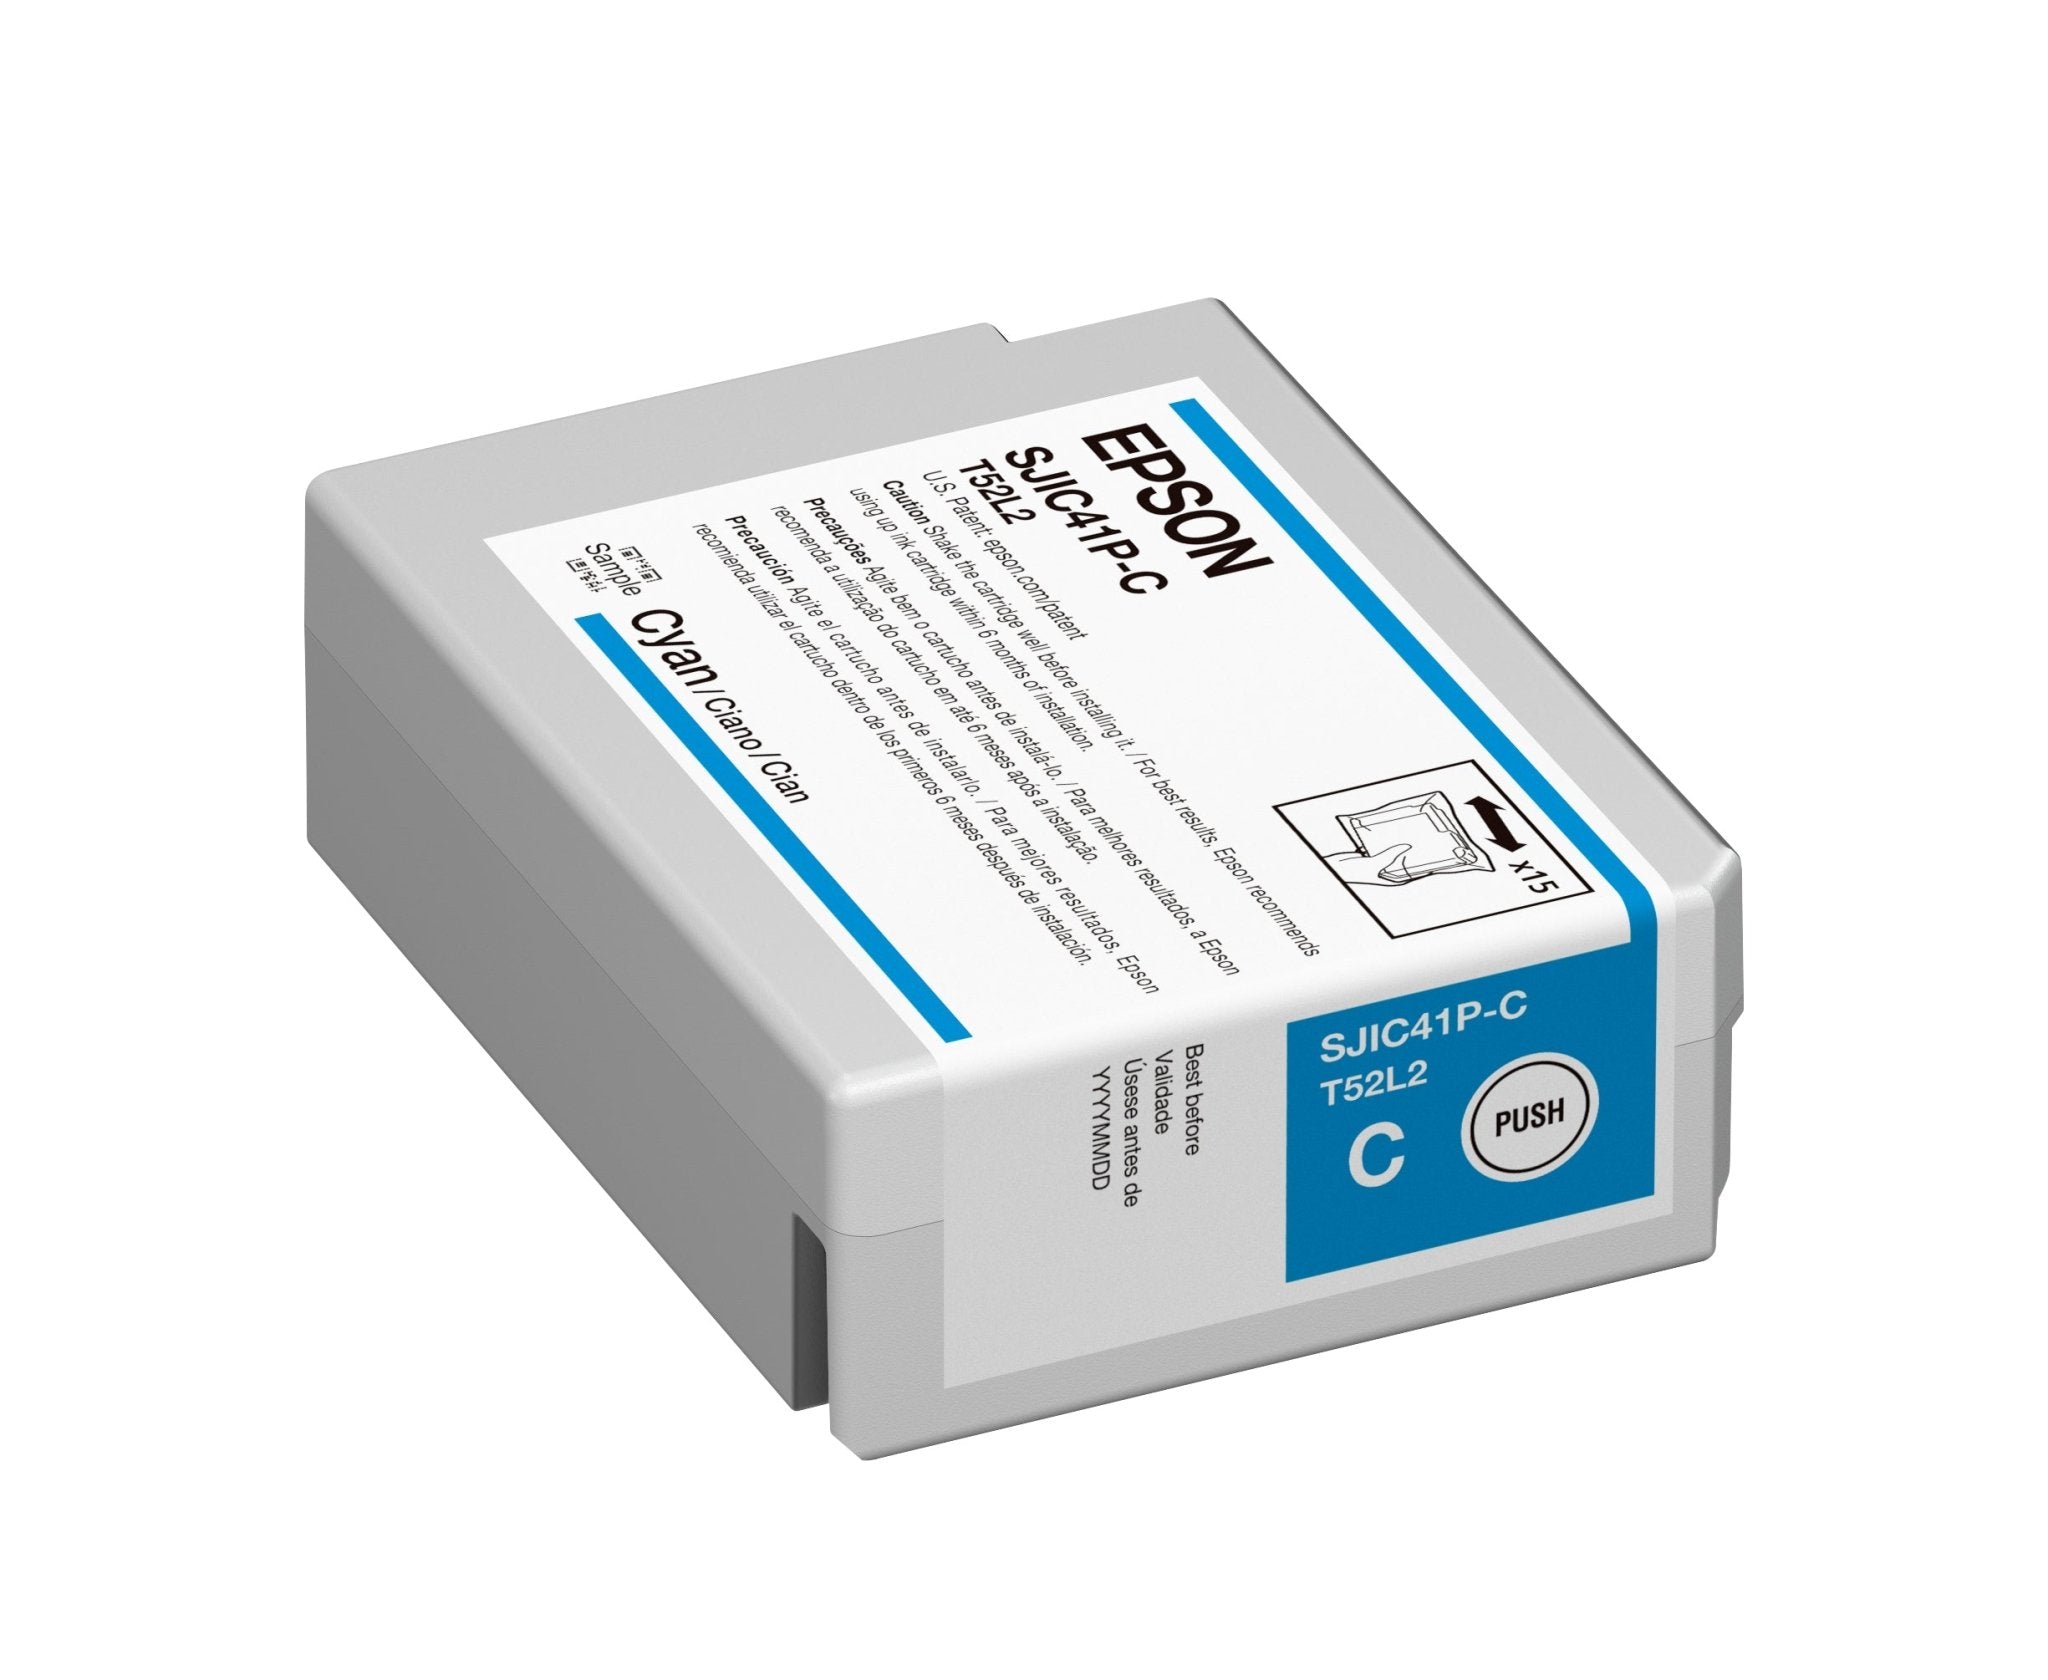 Epson ColorWorks C4000 Ink Cartridges (SJIC41P)